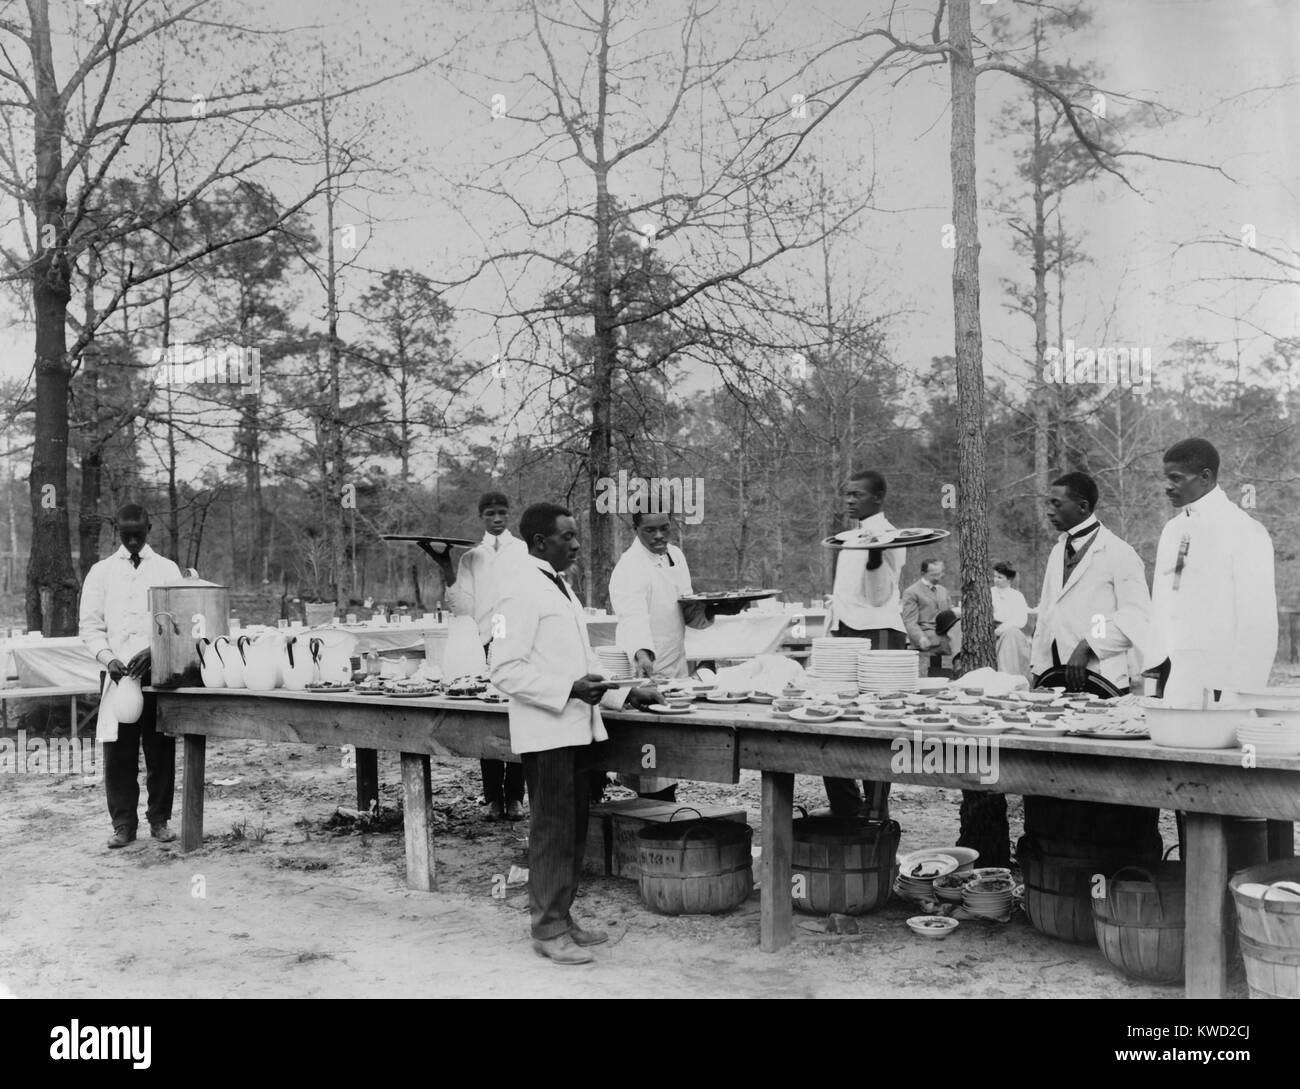 Les étudiants afro-américains de servir un repas en plein air à l'Institut Tuskegee, ch. 1890-1910. Service au restaurant était une carrière ouvert aux hommes africains-américains dans tout le pays, y compris la demande croissante de porteurs de wagons sur les chemins (BSLOC   2017 20 136) Banque D'Images